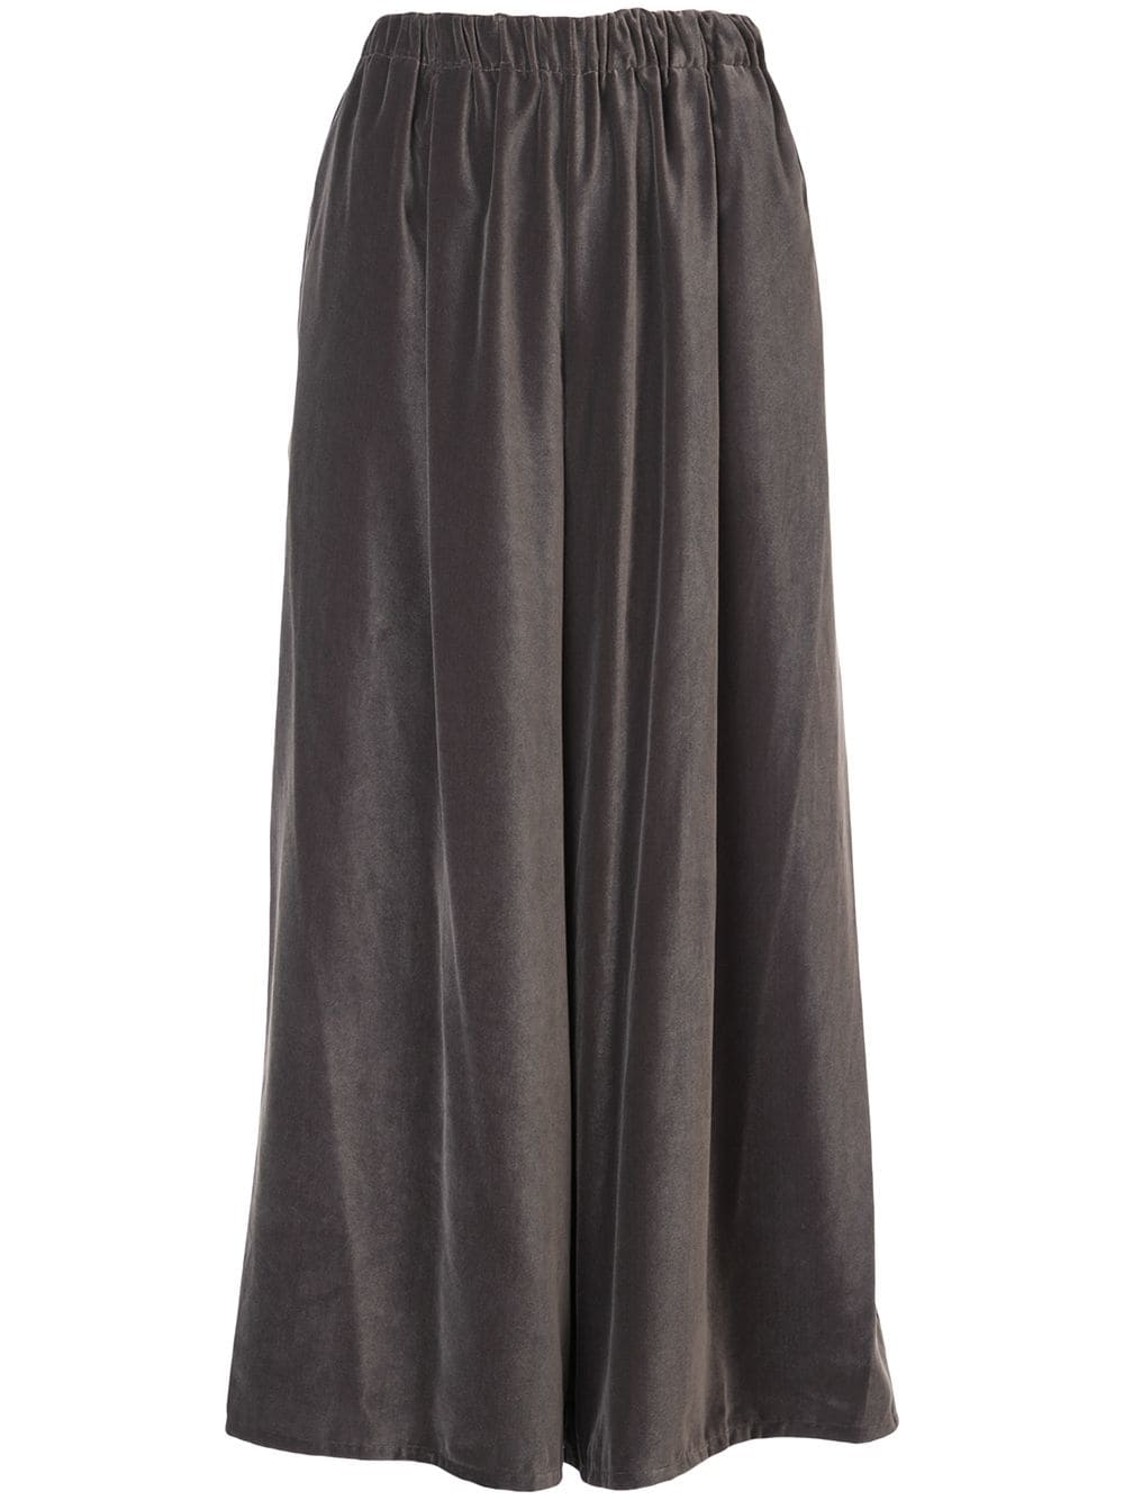 shop Dusan Sales Pantaloni: Pantalone Dusan, modello ampio, elastico in vita, tasche laterali, color grigio.

Composizione: 100% velluto. number 1341